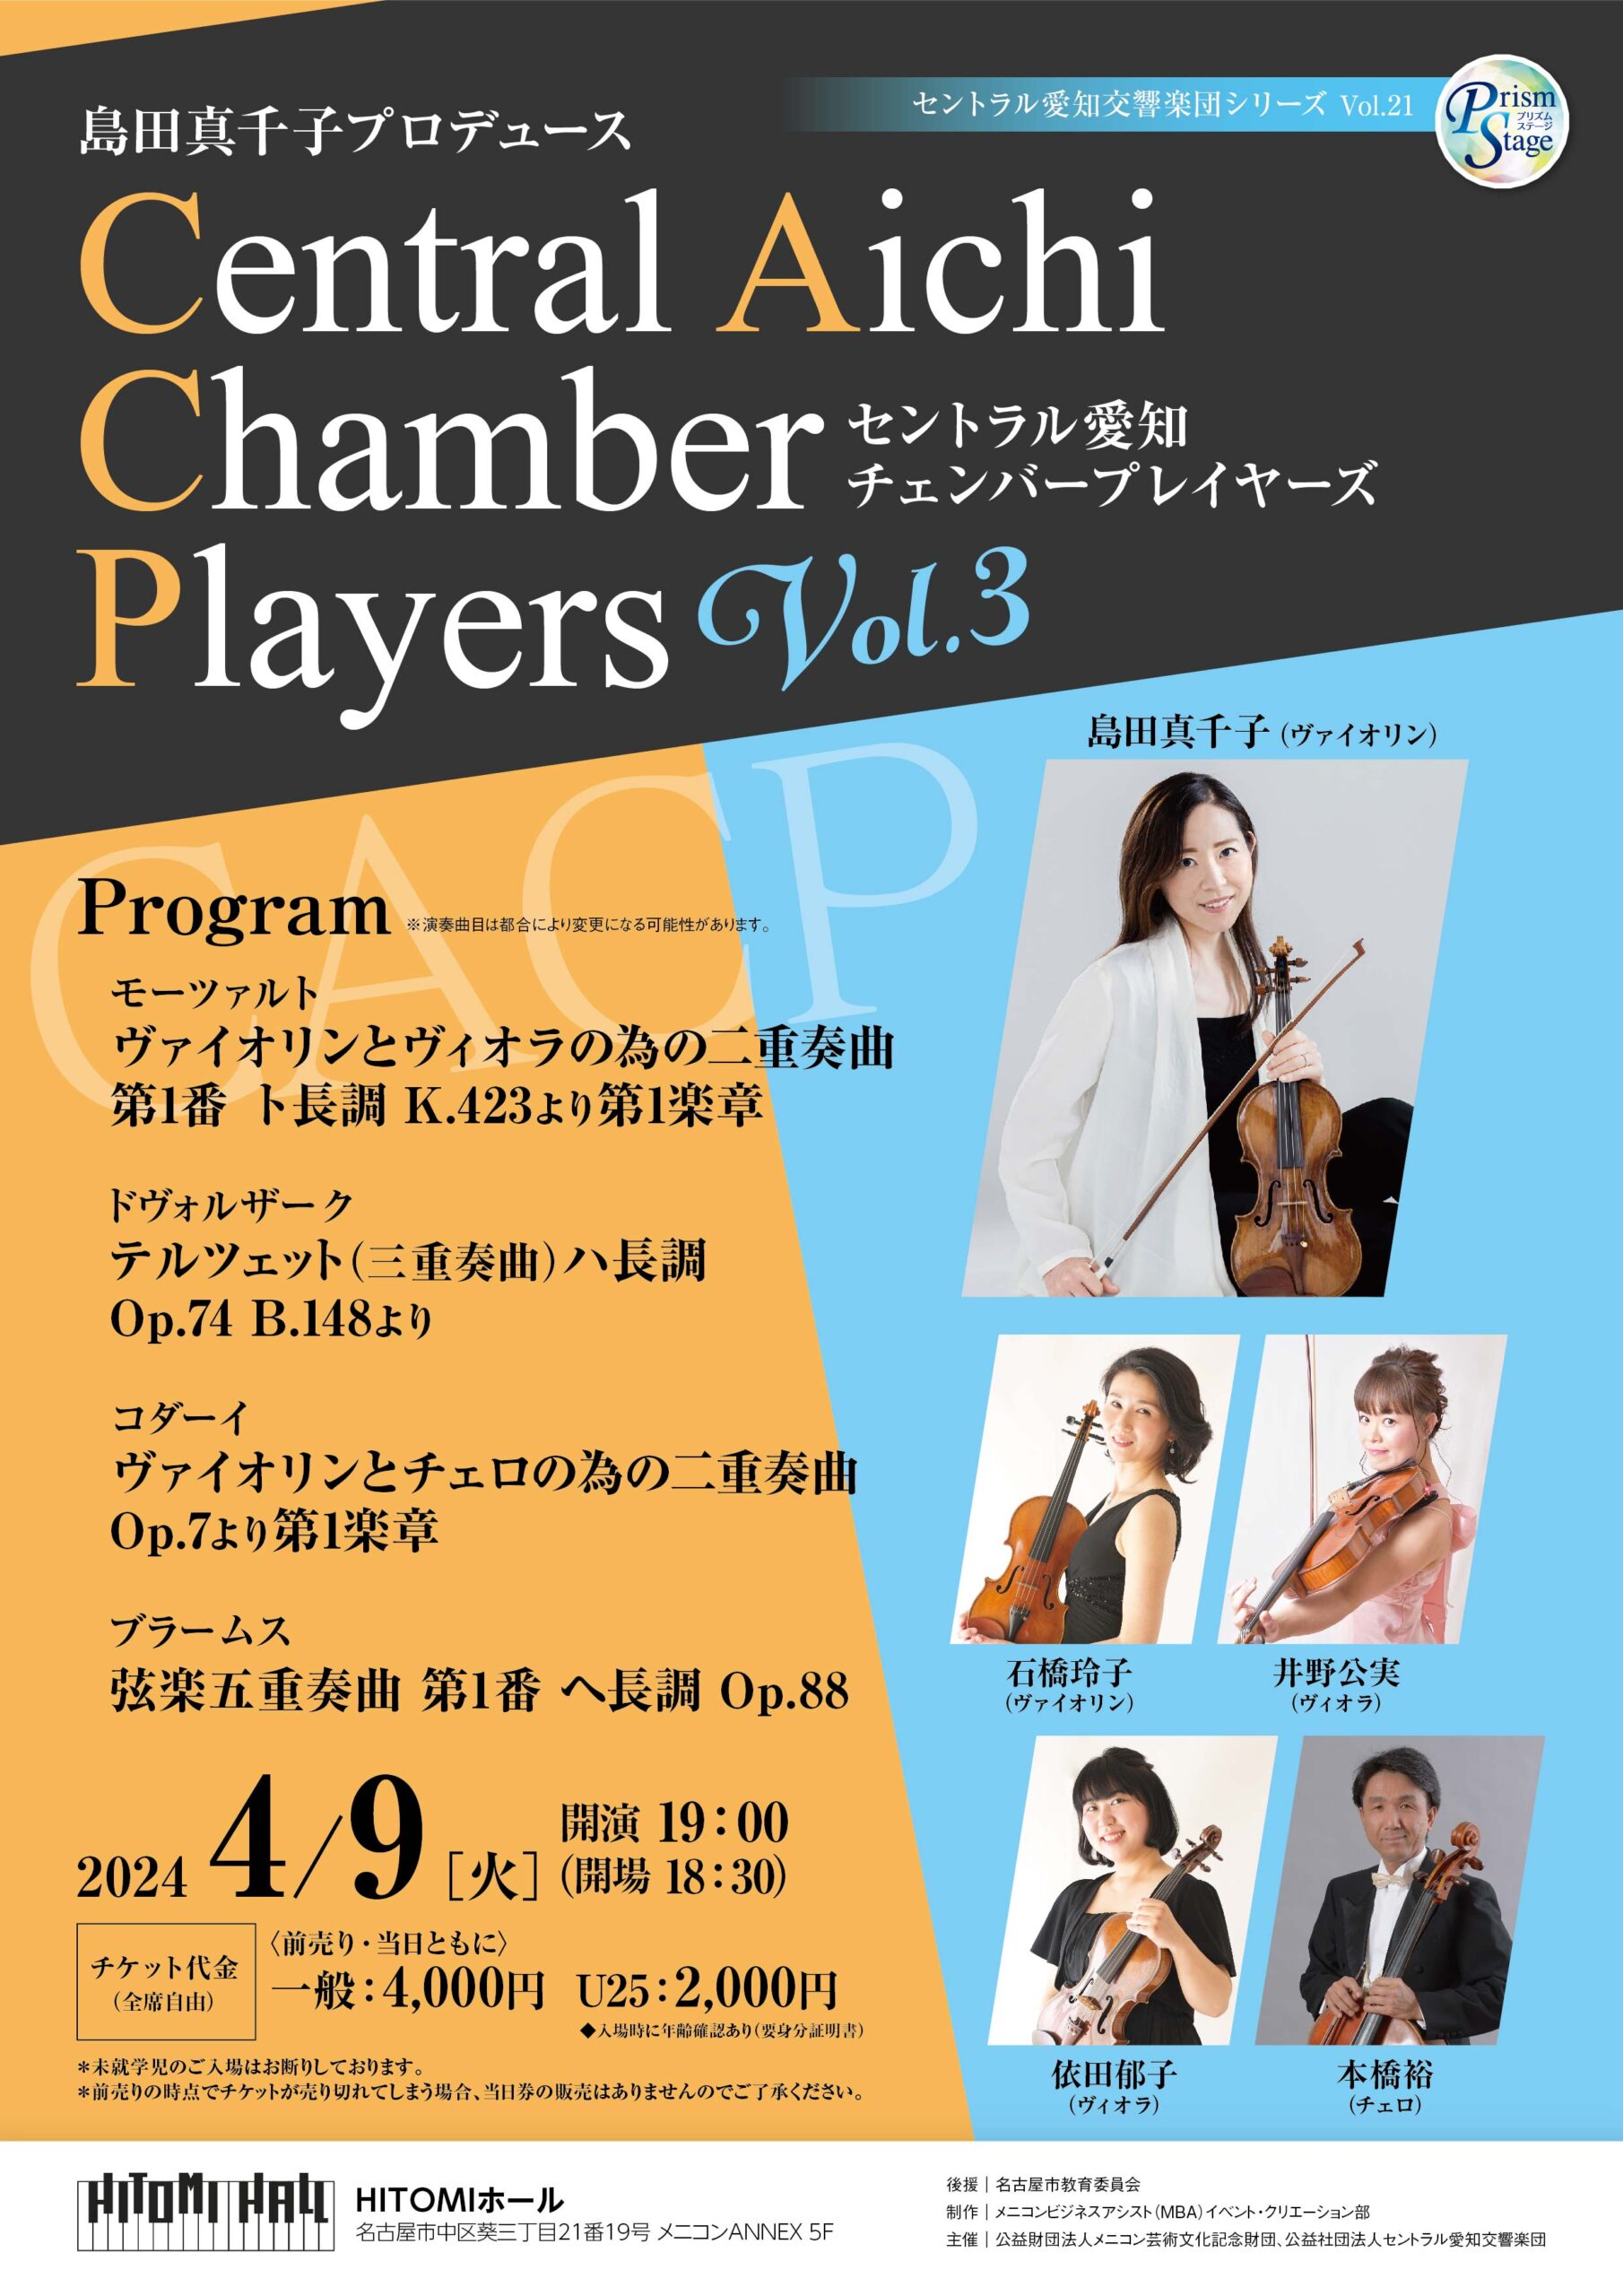 プリズムステージセントラル愛知交響楽団シリーズVol.21 Central Aichi Chamber Players Vol.3